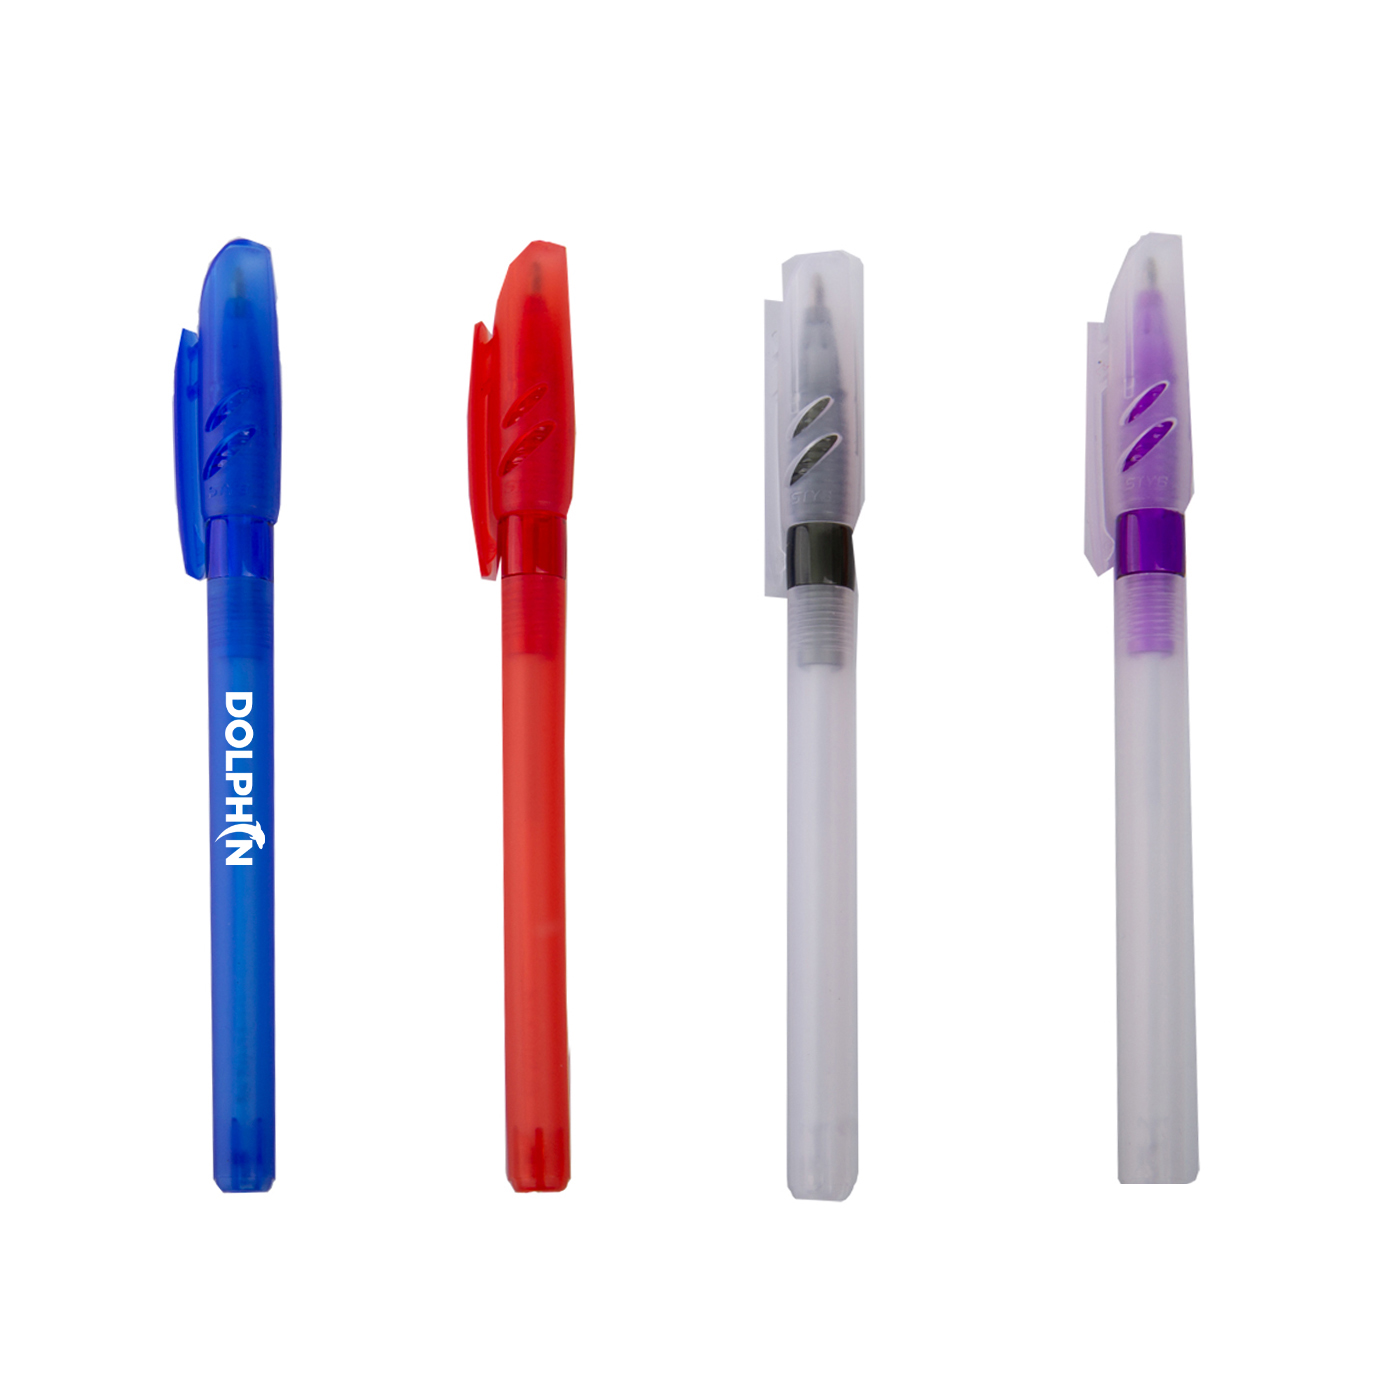 Transparent Plastic Ballpoint Pen With Venture Cap